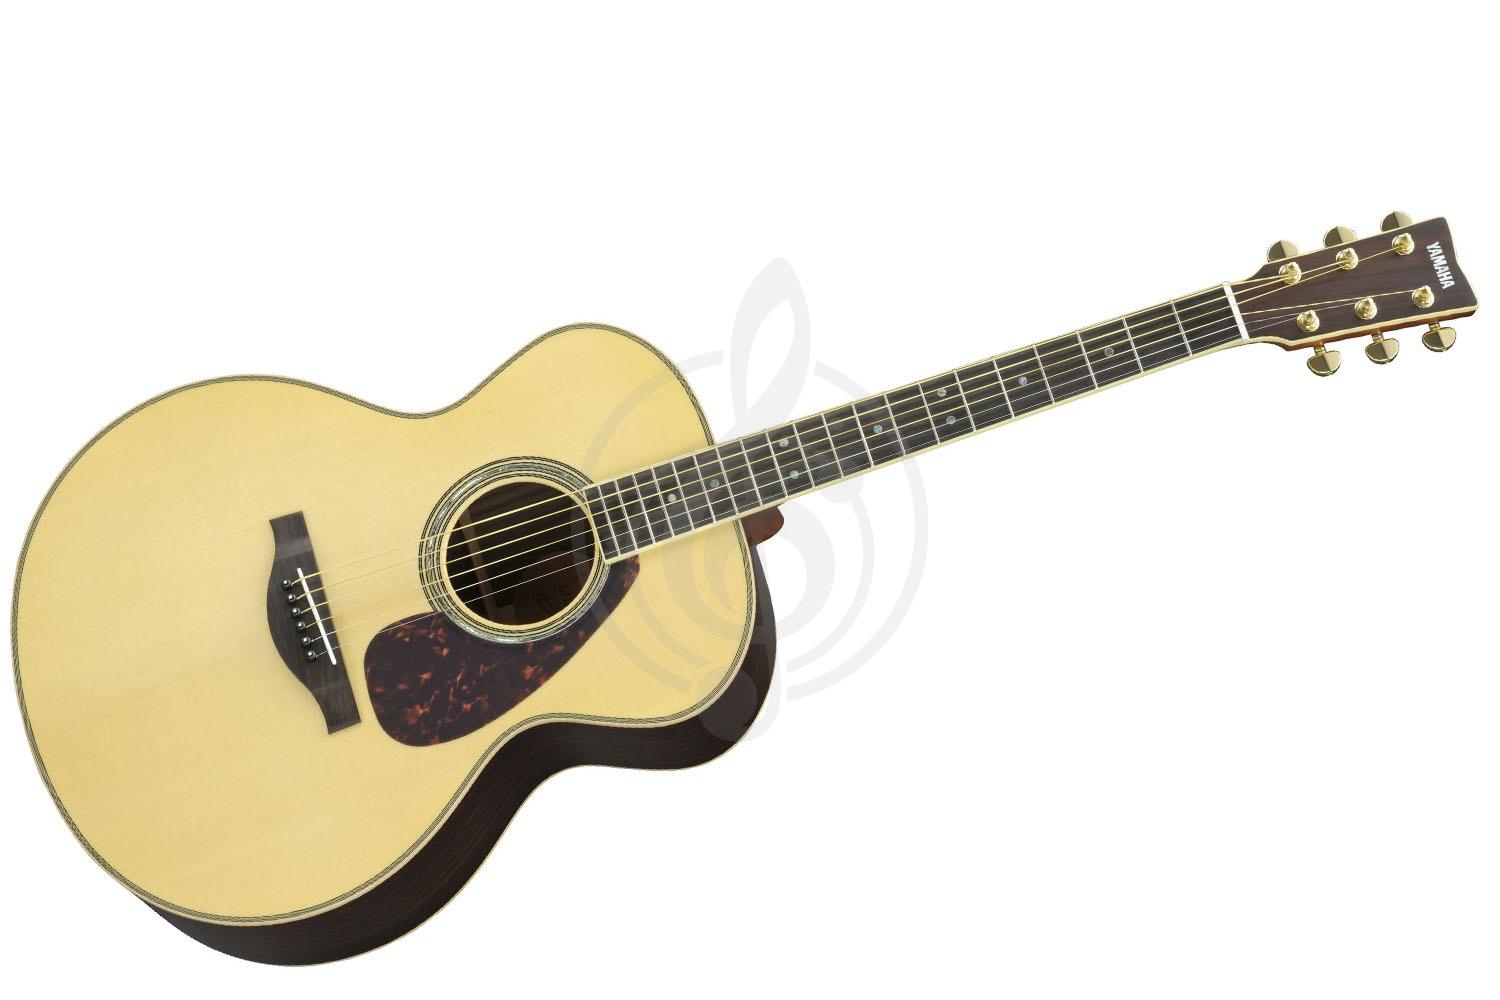 Акустическая гитара Акустические гитары Yamaha Yamaha LJ16 (ARE) - акустическая гитара LJ16//ARE - фото 1